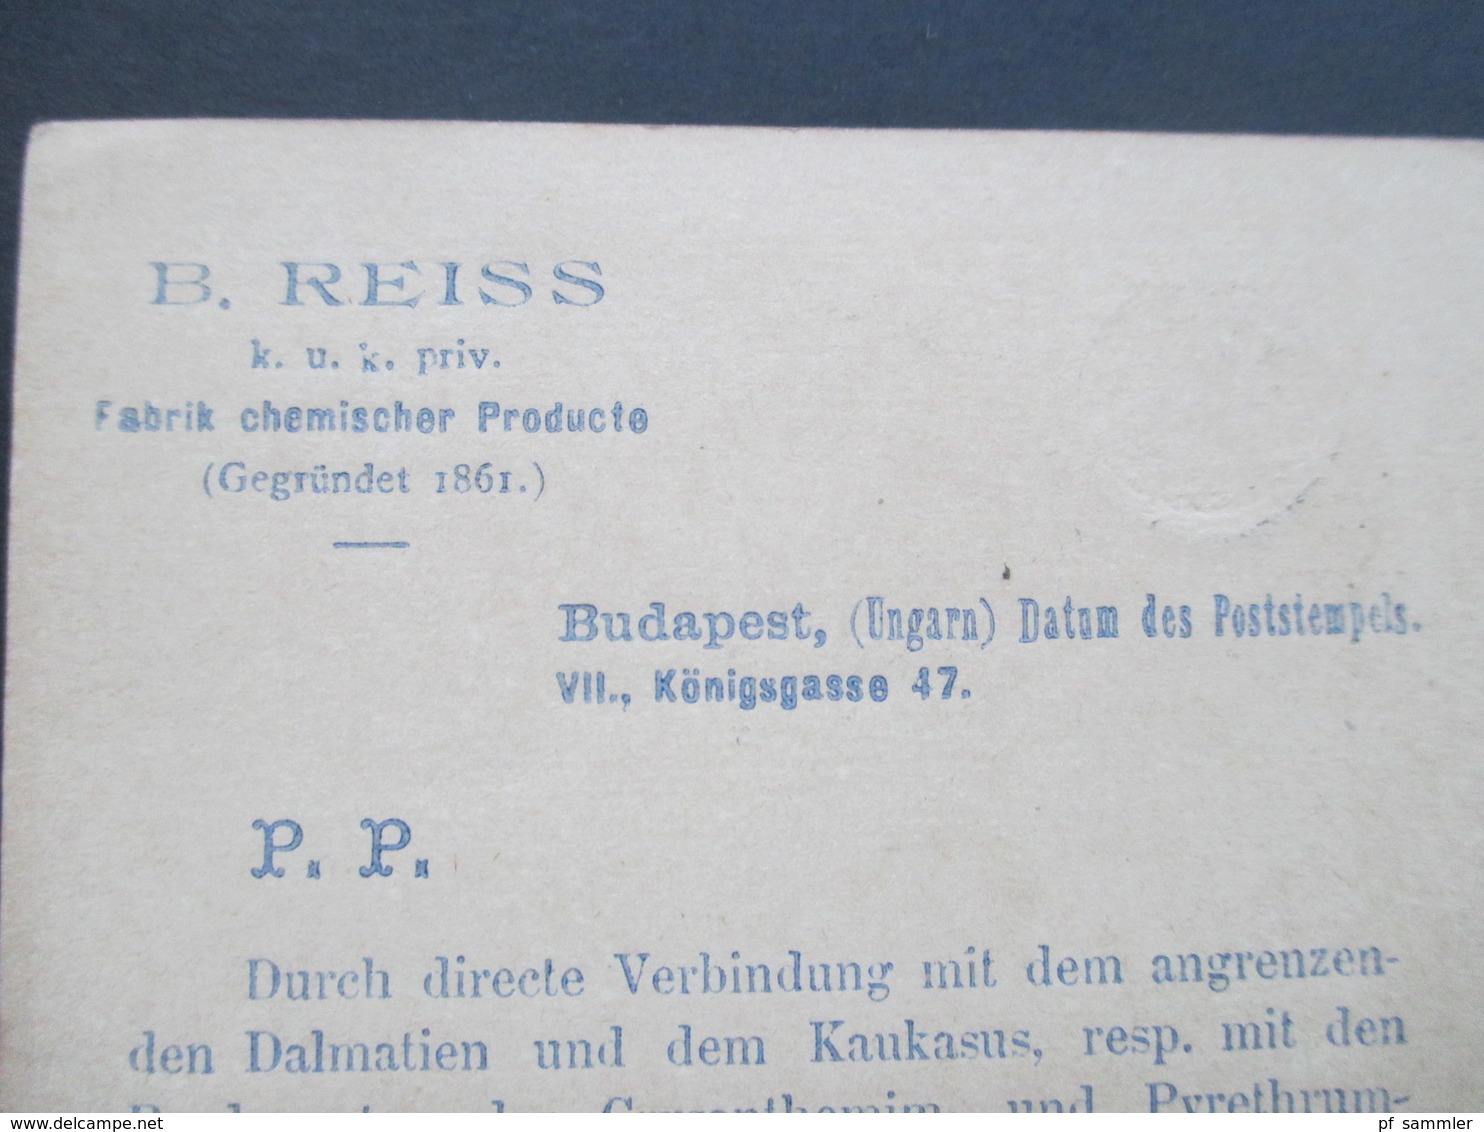 Ungarn 1889 Ganzsache Firmenwerbung! B. Reiss KuK Priv. Fabrik Chemischer Producte. Ungefärbtes Insectenpulver - Briefe U. Dokumente